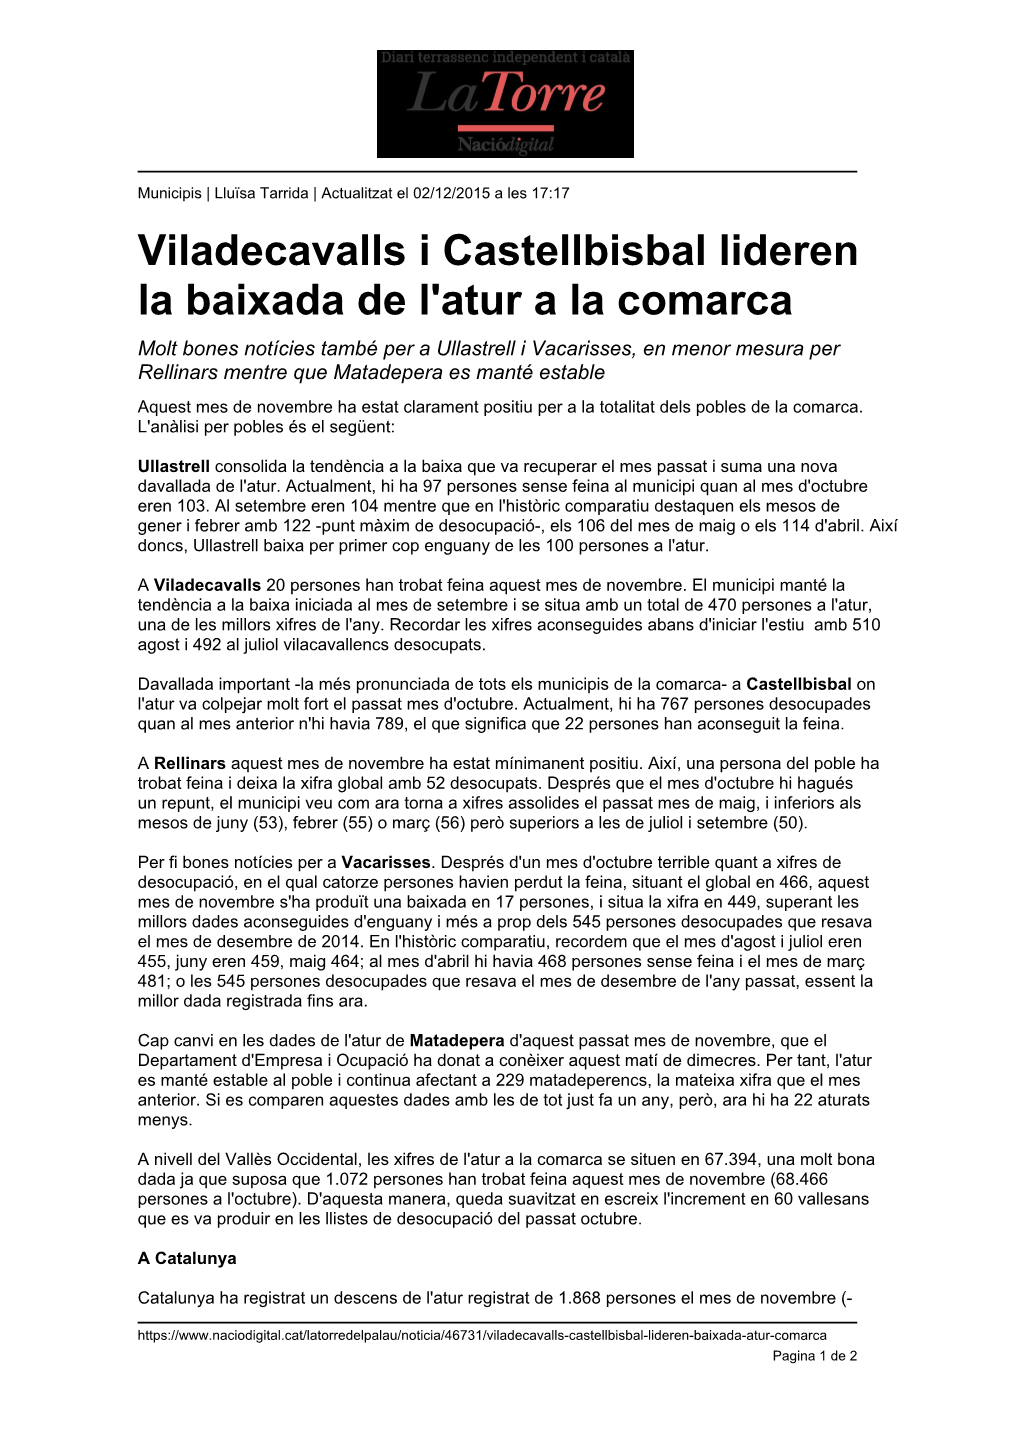 Viladecavalls I Castellbisbal Lideren La Baixada De L'atur a La Comarca